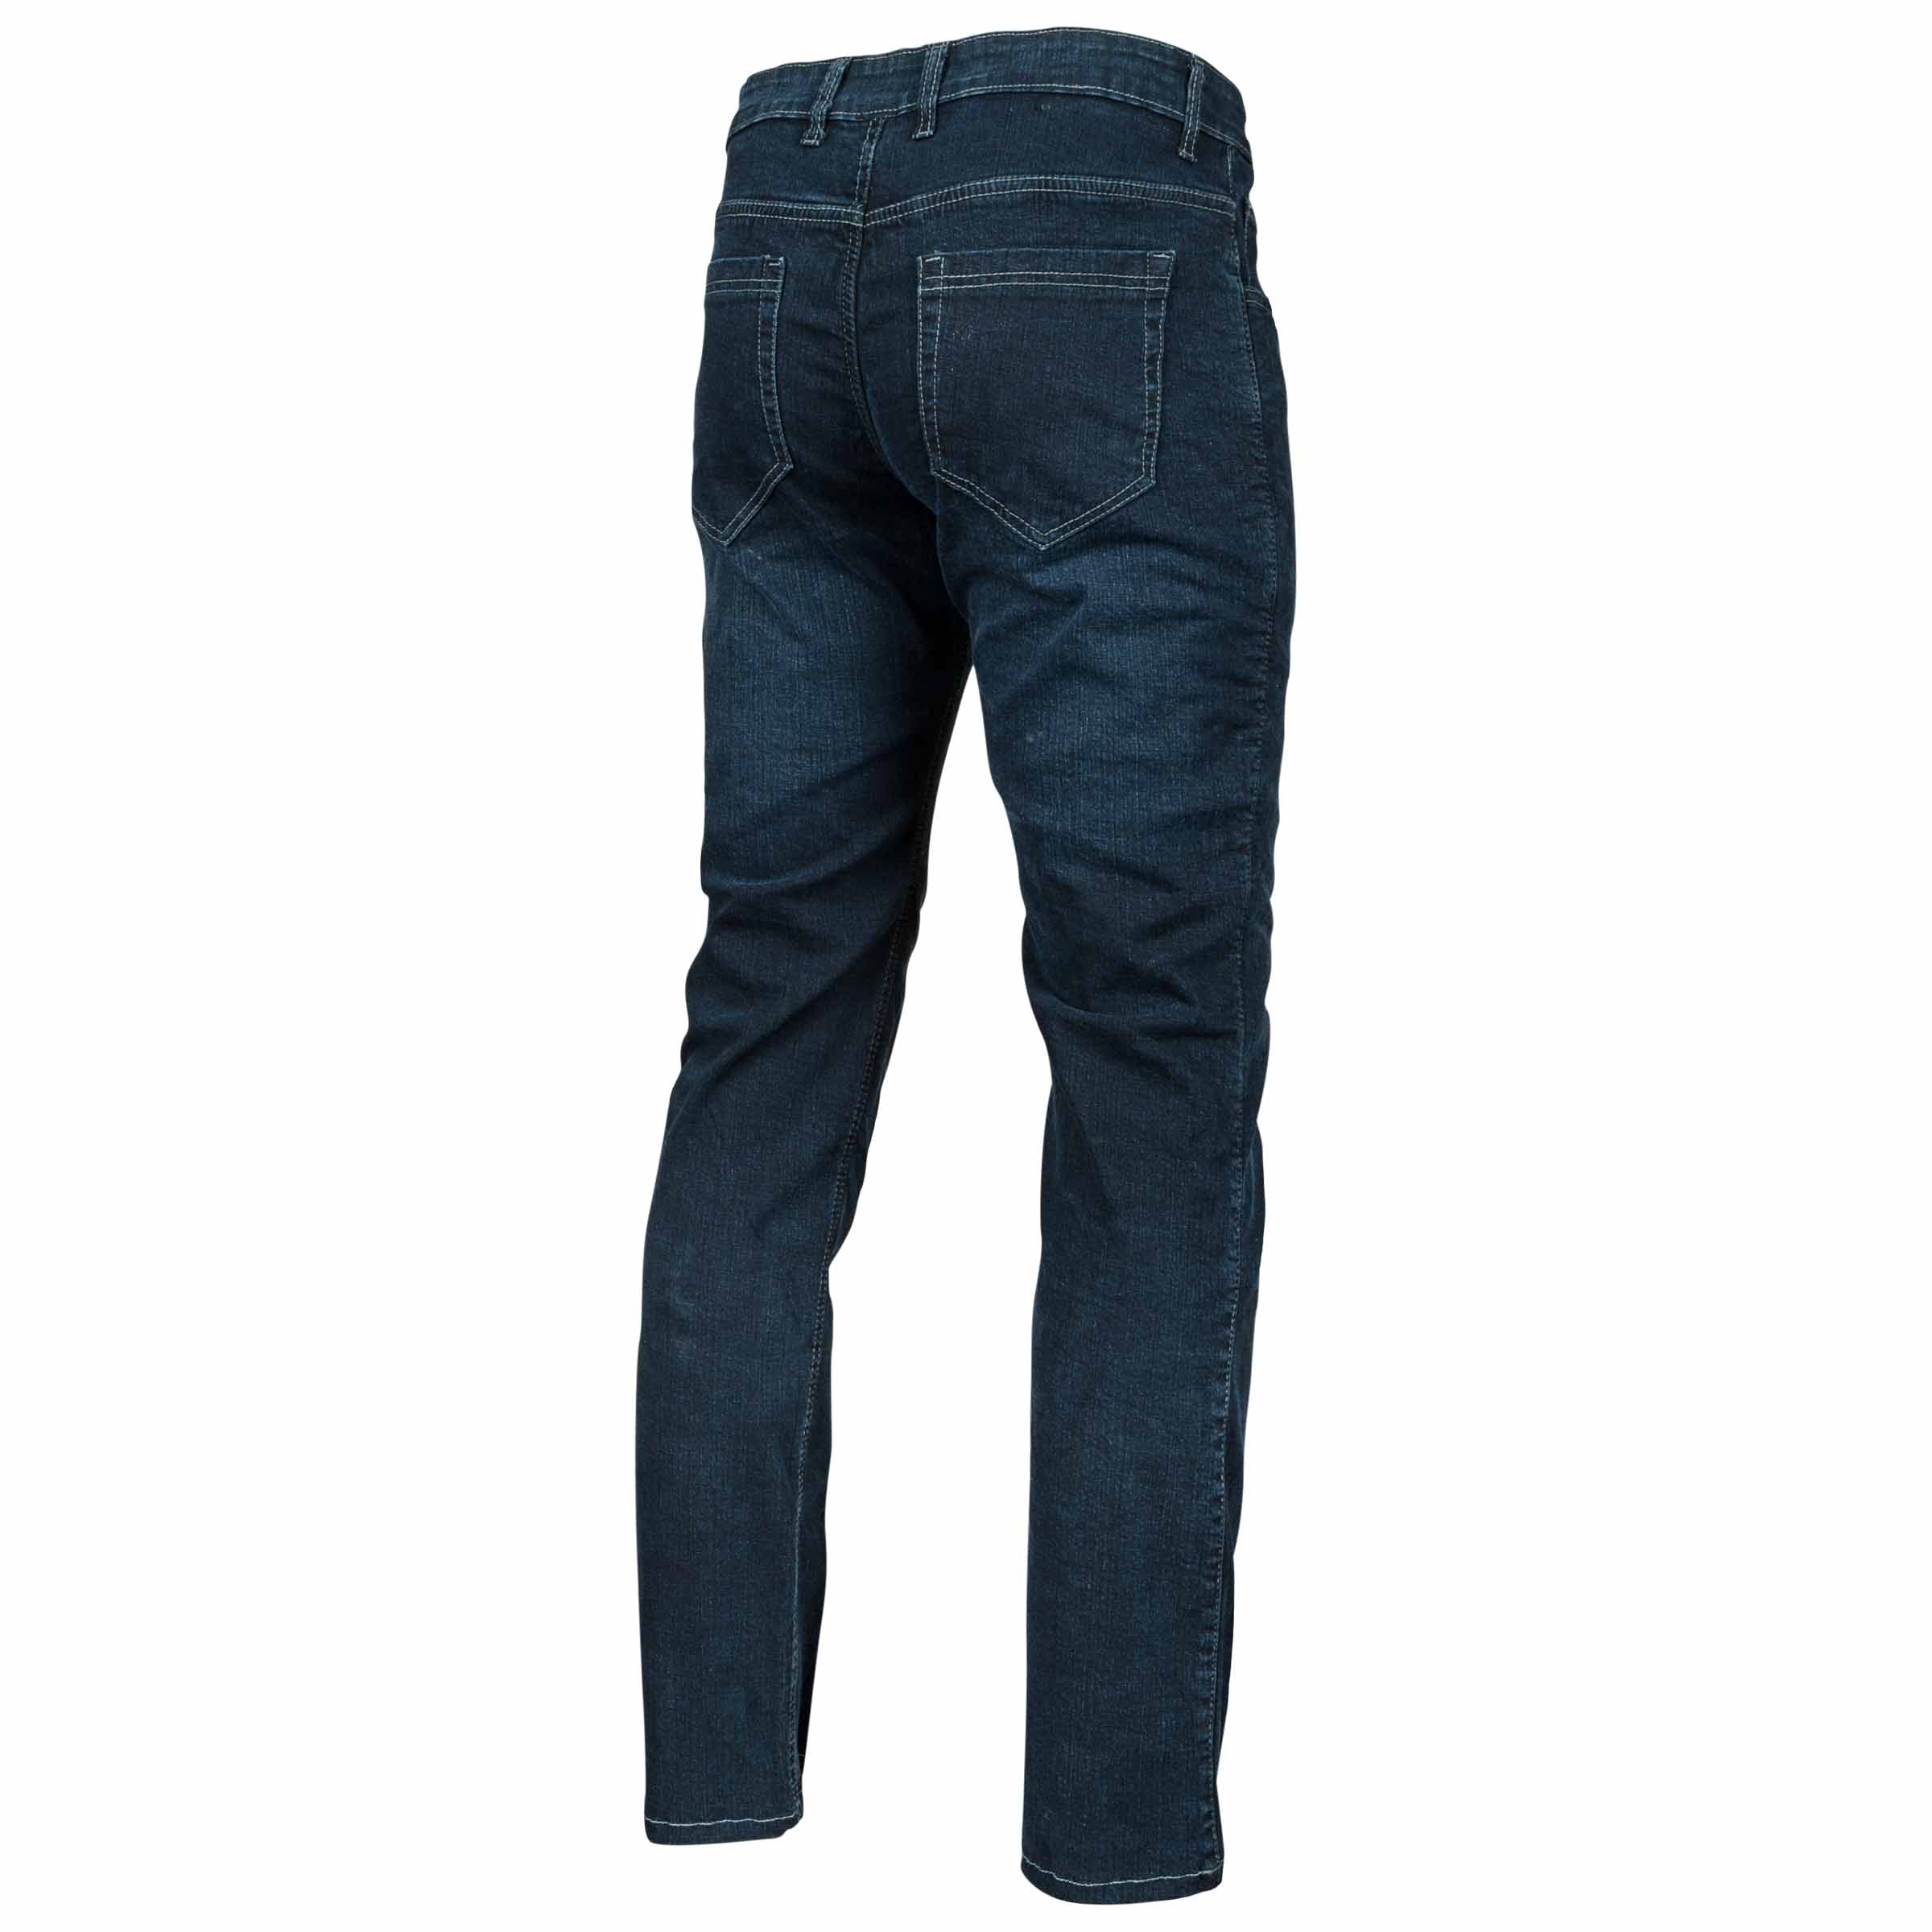 Navy Motto Jeggings REAL Back Pockets JV Zipper Blue Moto Leggings Pleated  Jeans 